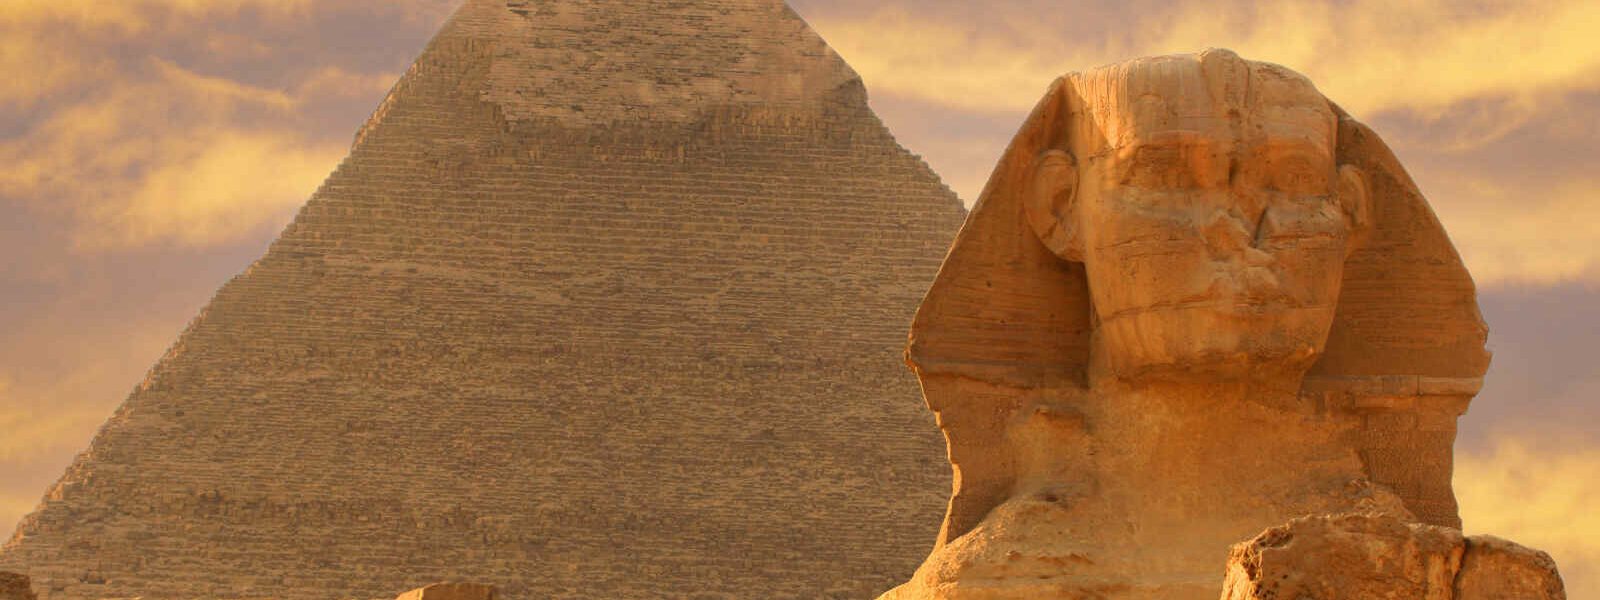 Pyramides et Sphinx, Le Caire, Egypte